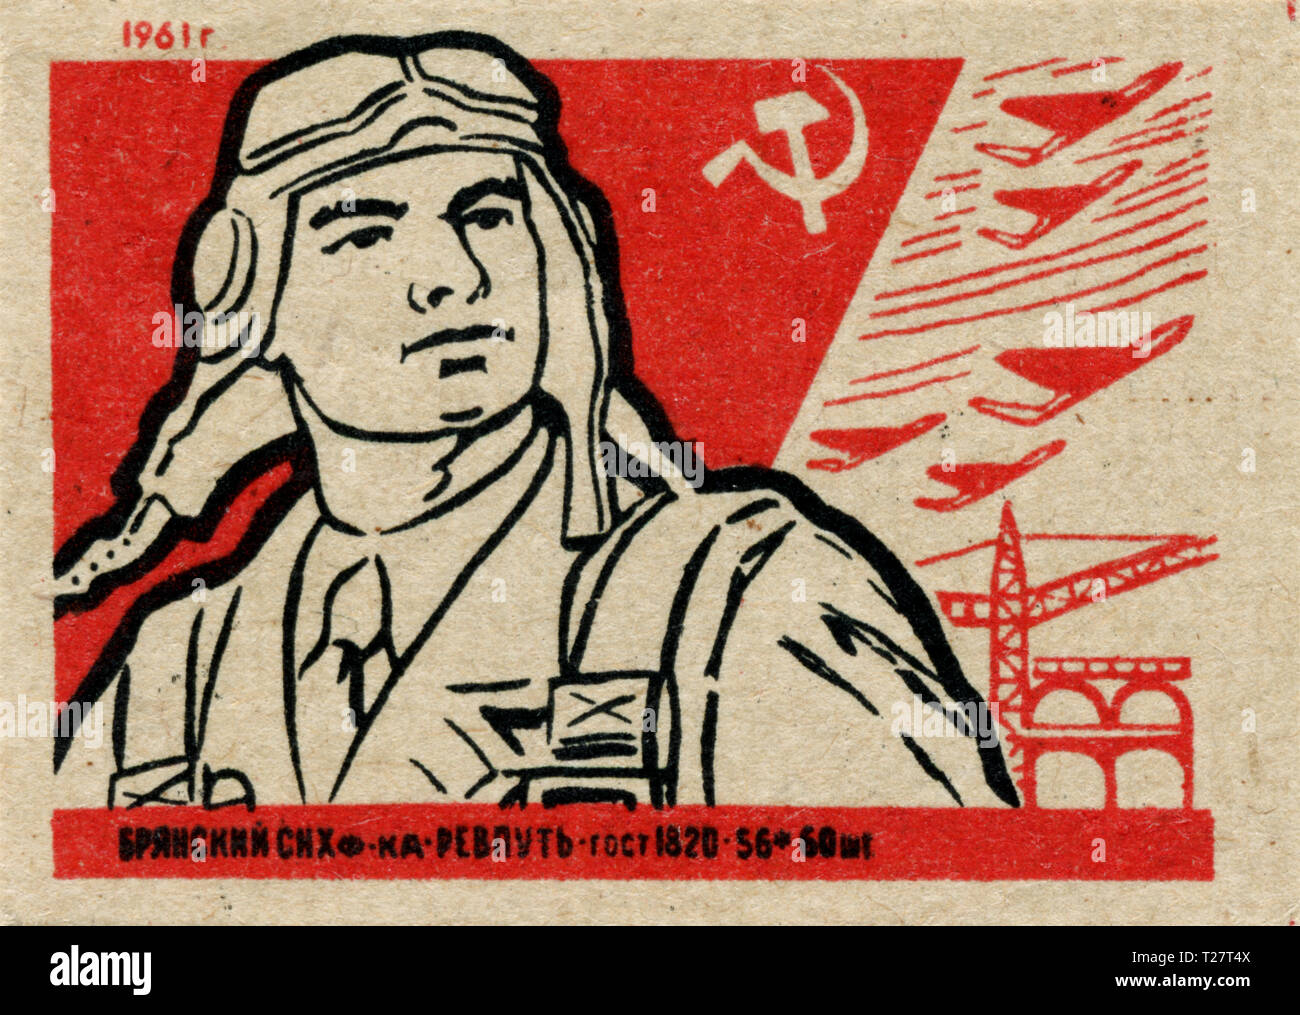 Russland - 1961: Sowjetunion Propaganda, streichholzschachtel Grafiksammlung, UDSSR Armee Stockfoto